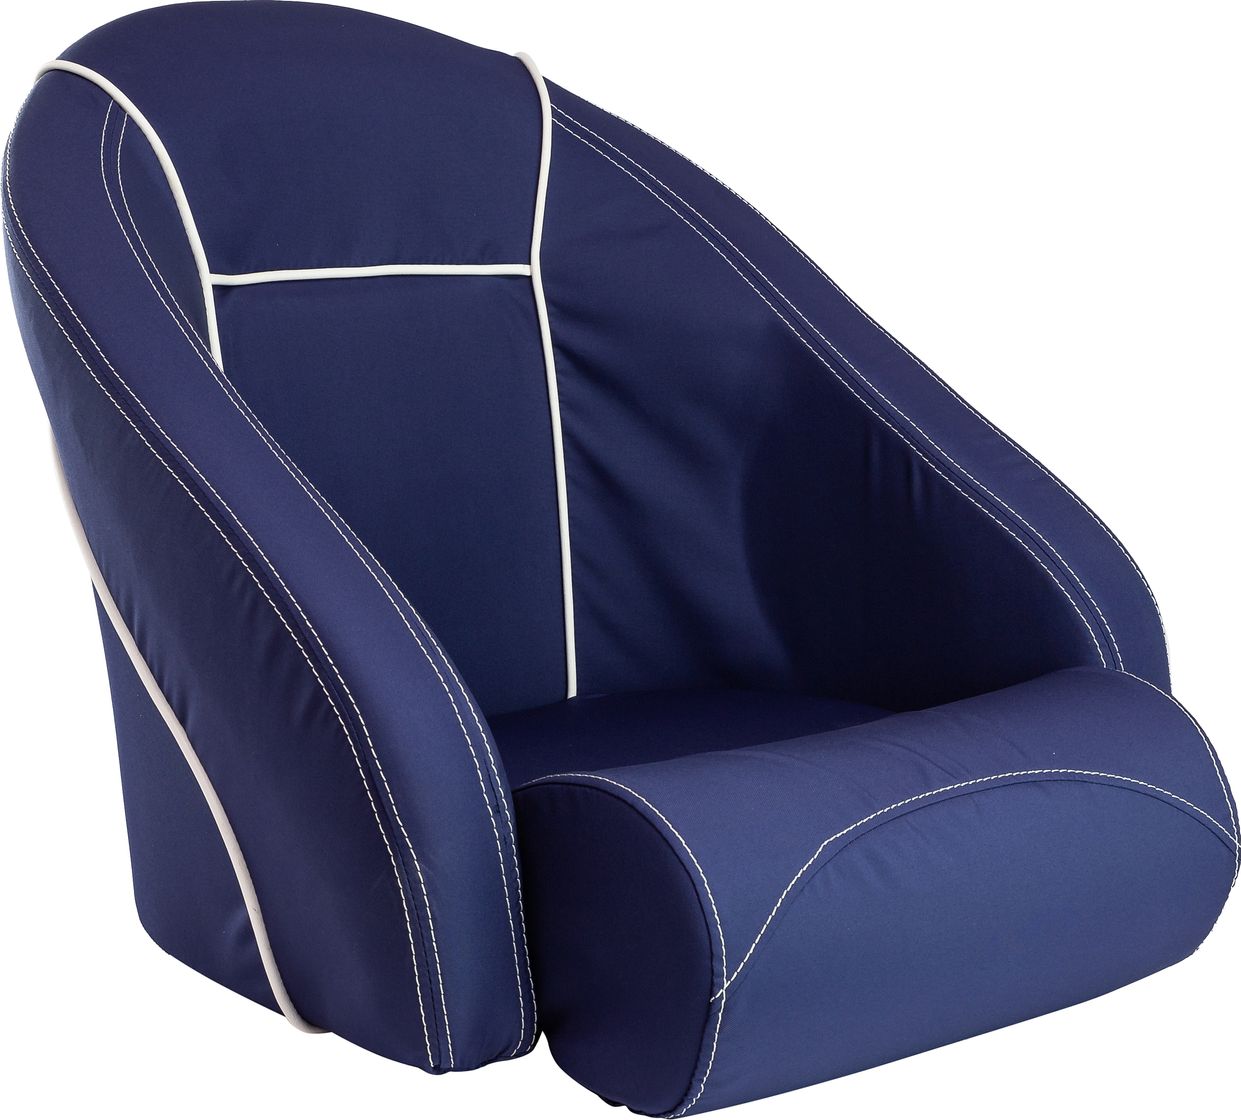 Кресло ROMEO мягкое, подставка, обивка ткань Markilux темно-синяя 118100395